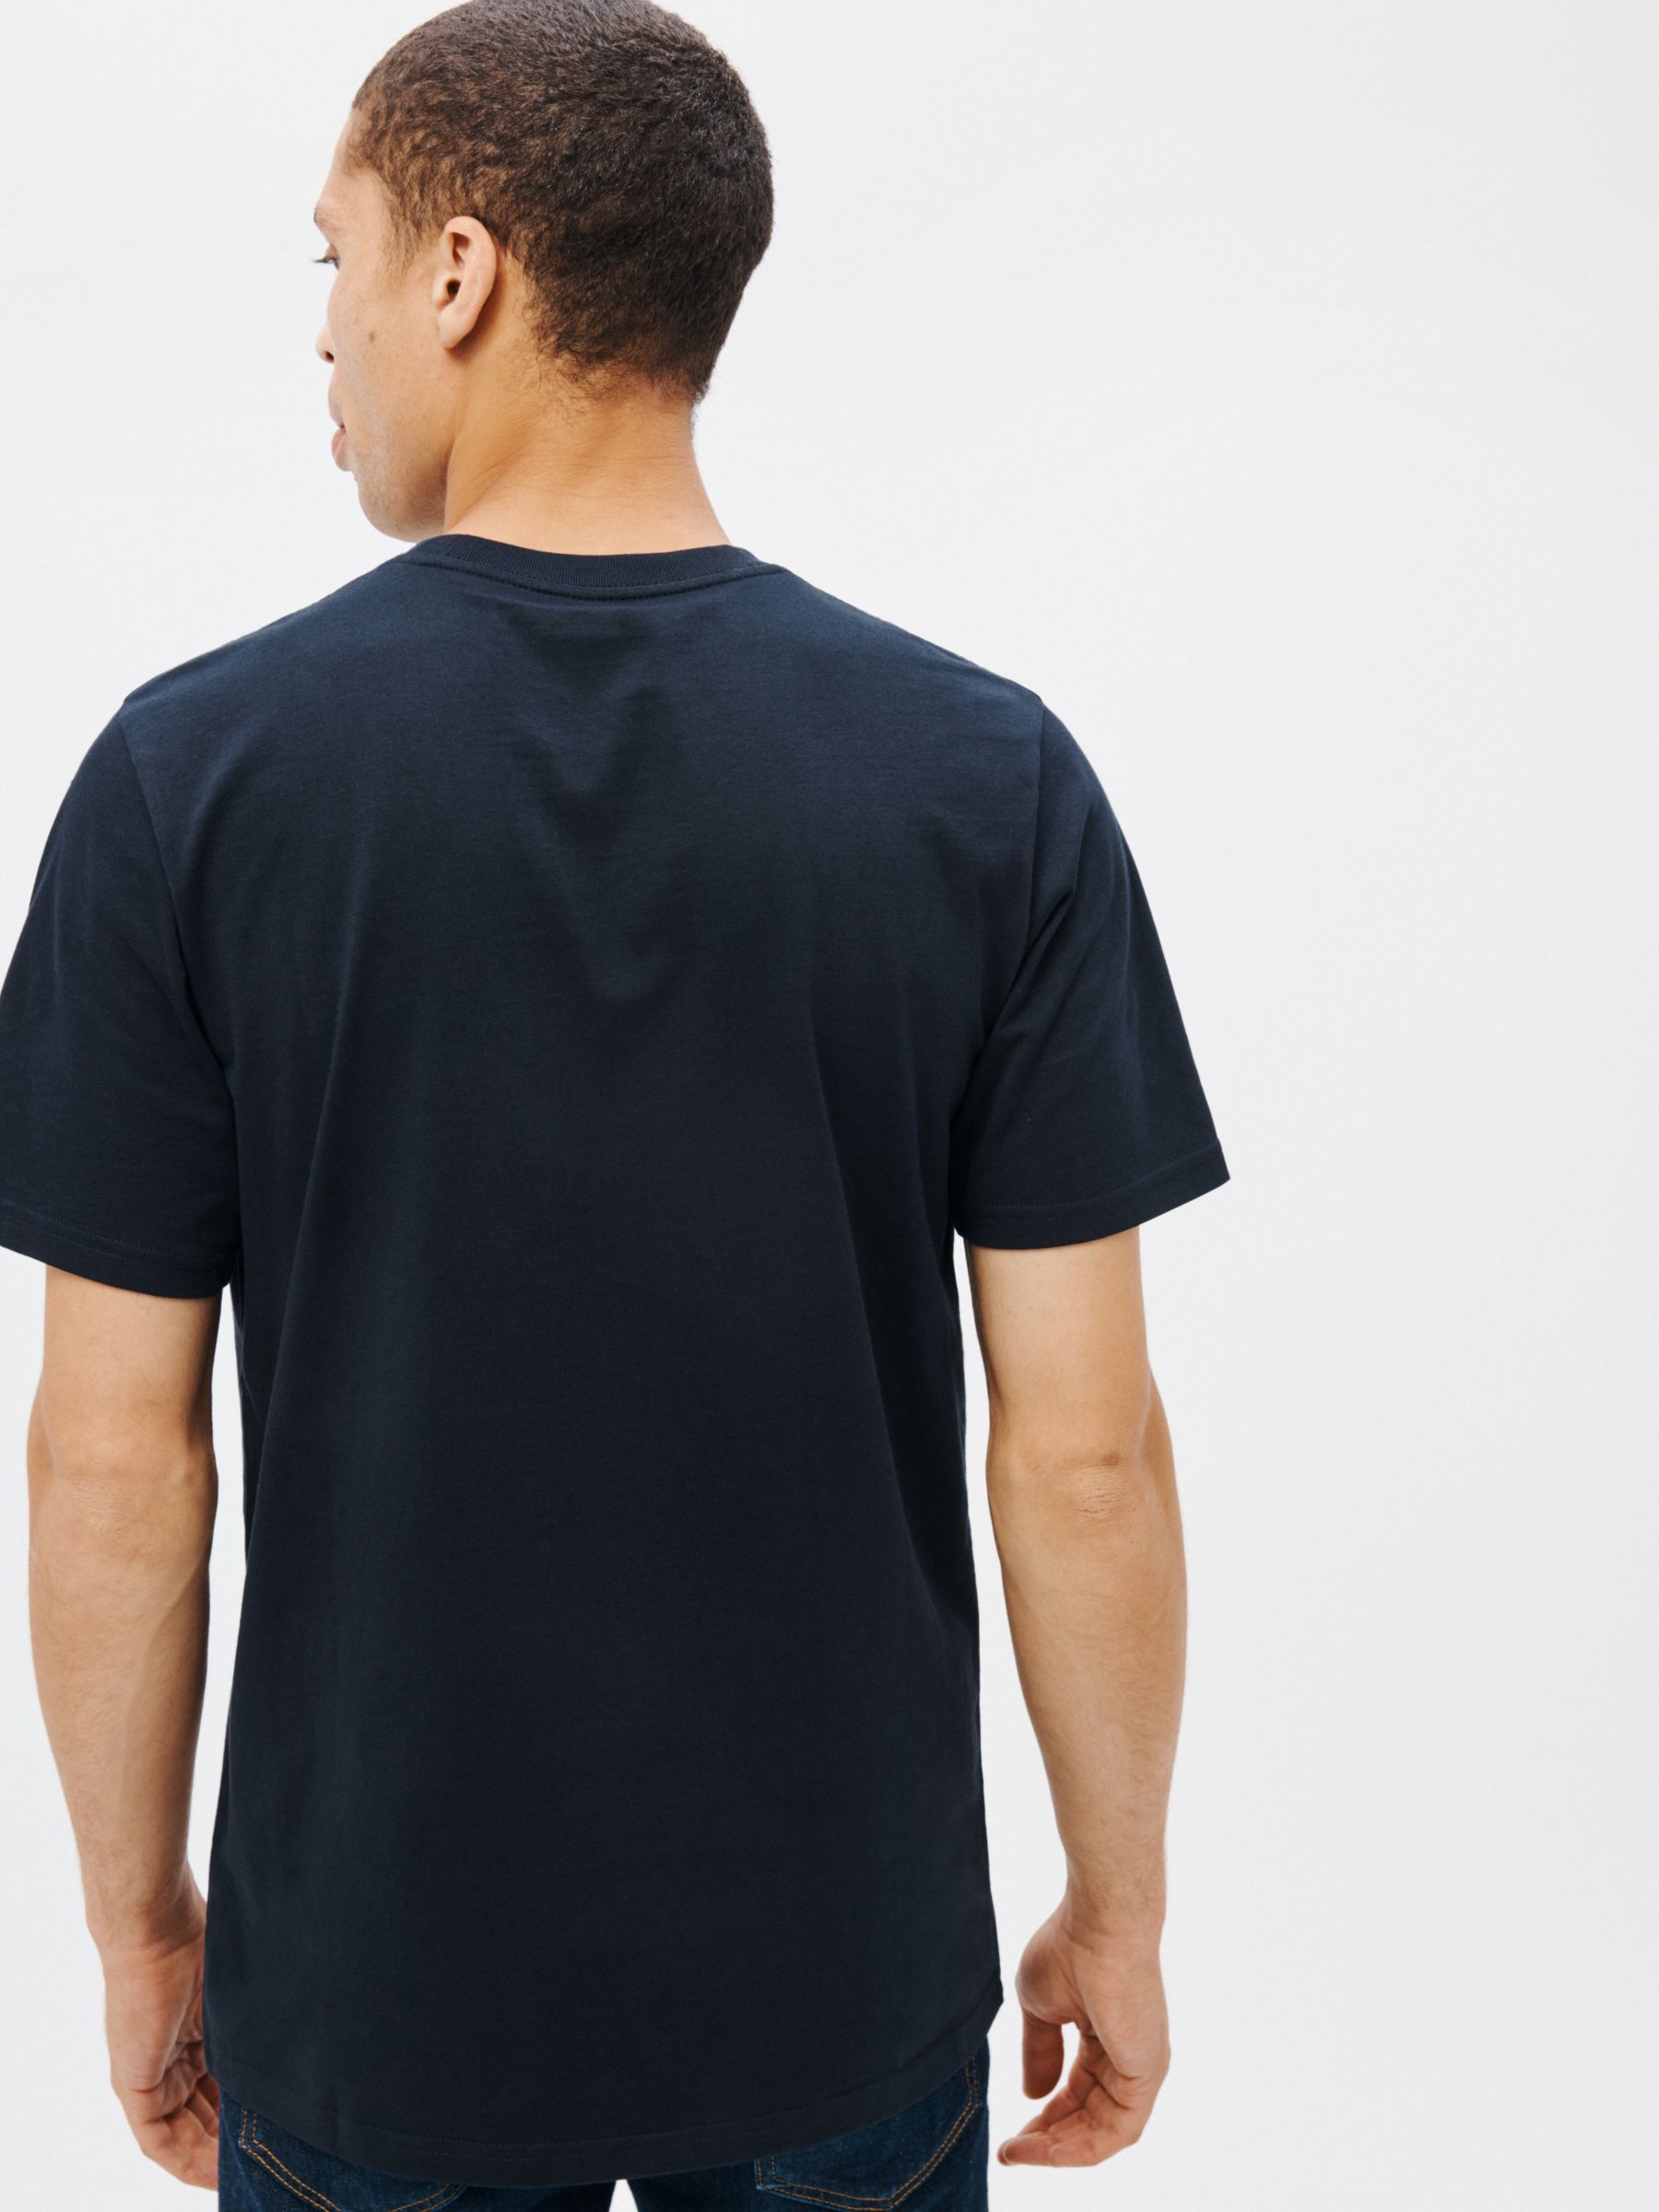 Carhartt WIP Short Sleeve Pocket T-Shirt, Dark Navy, S